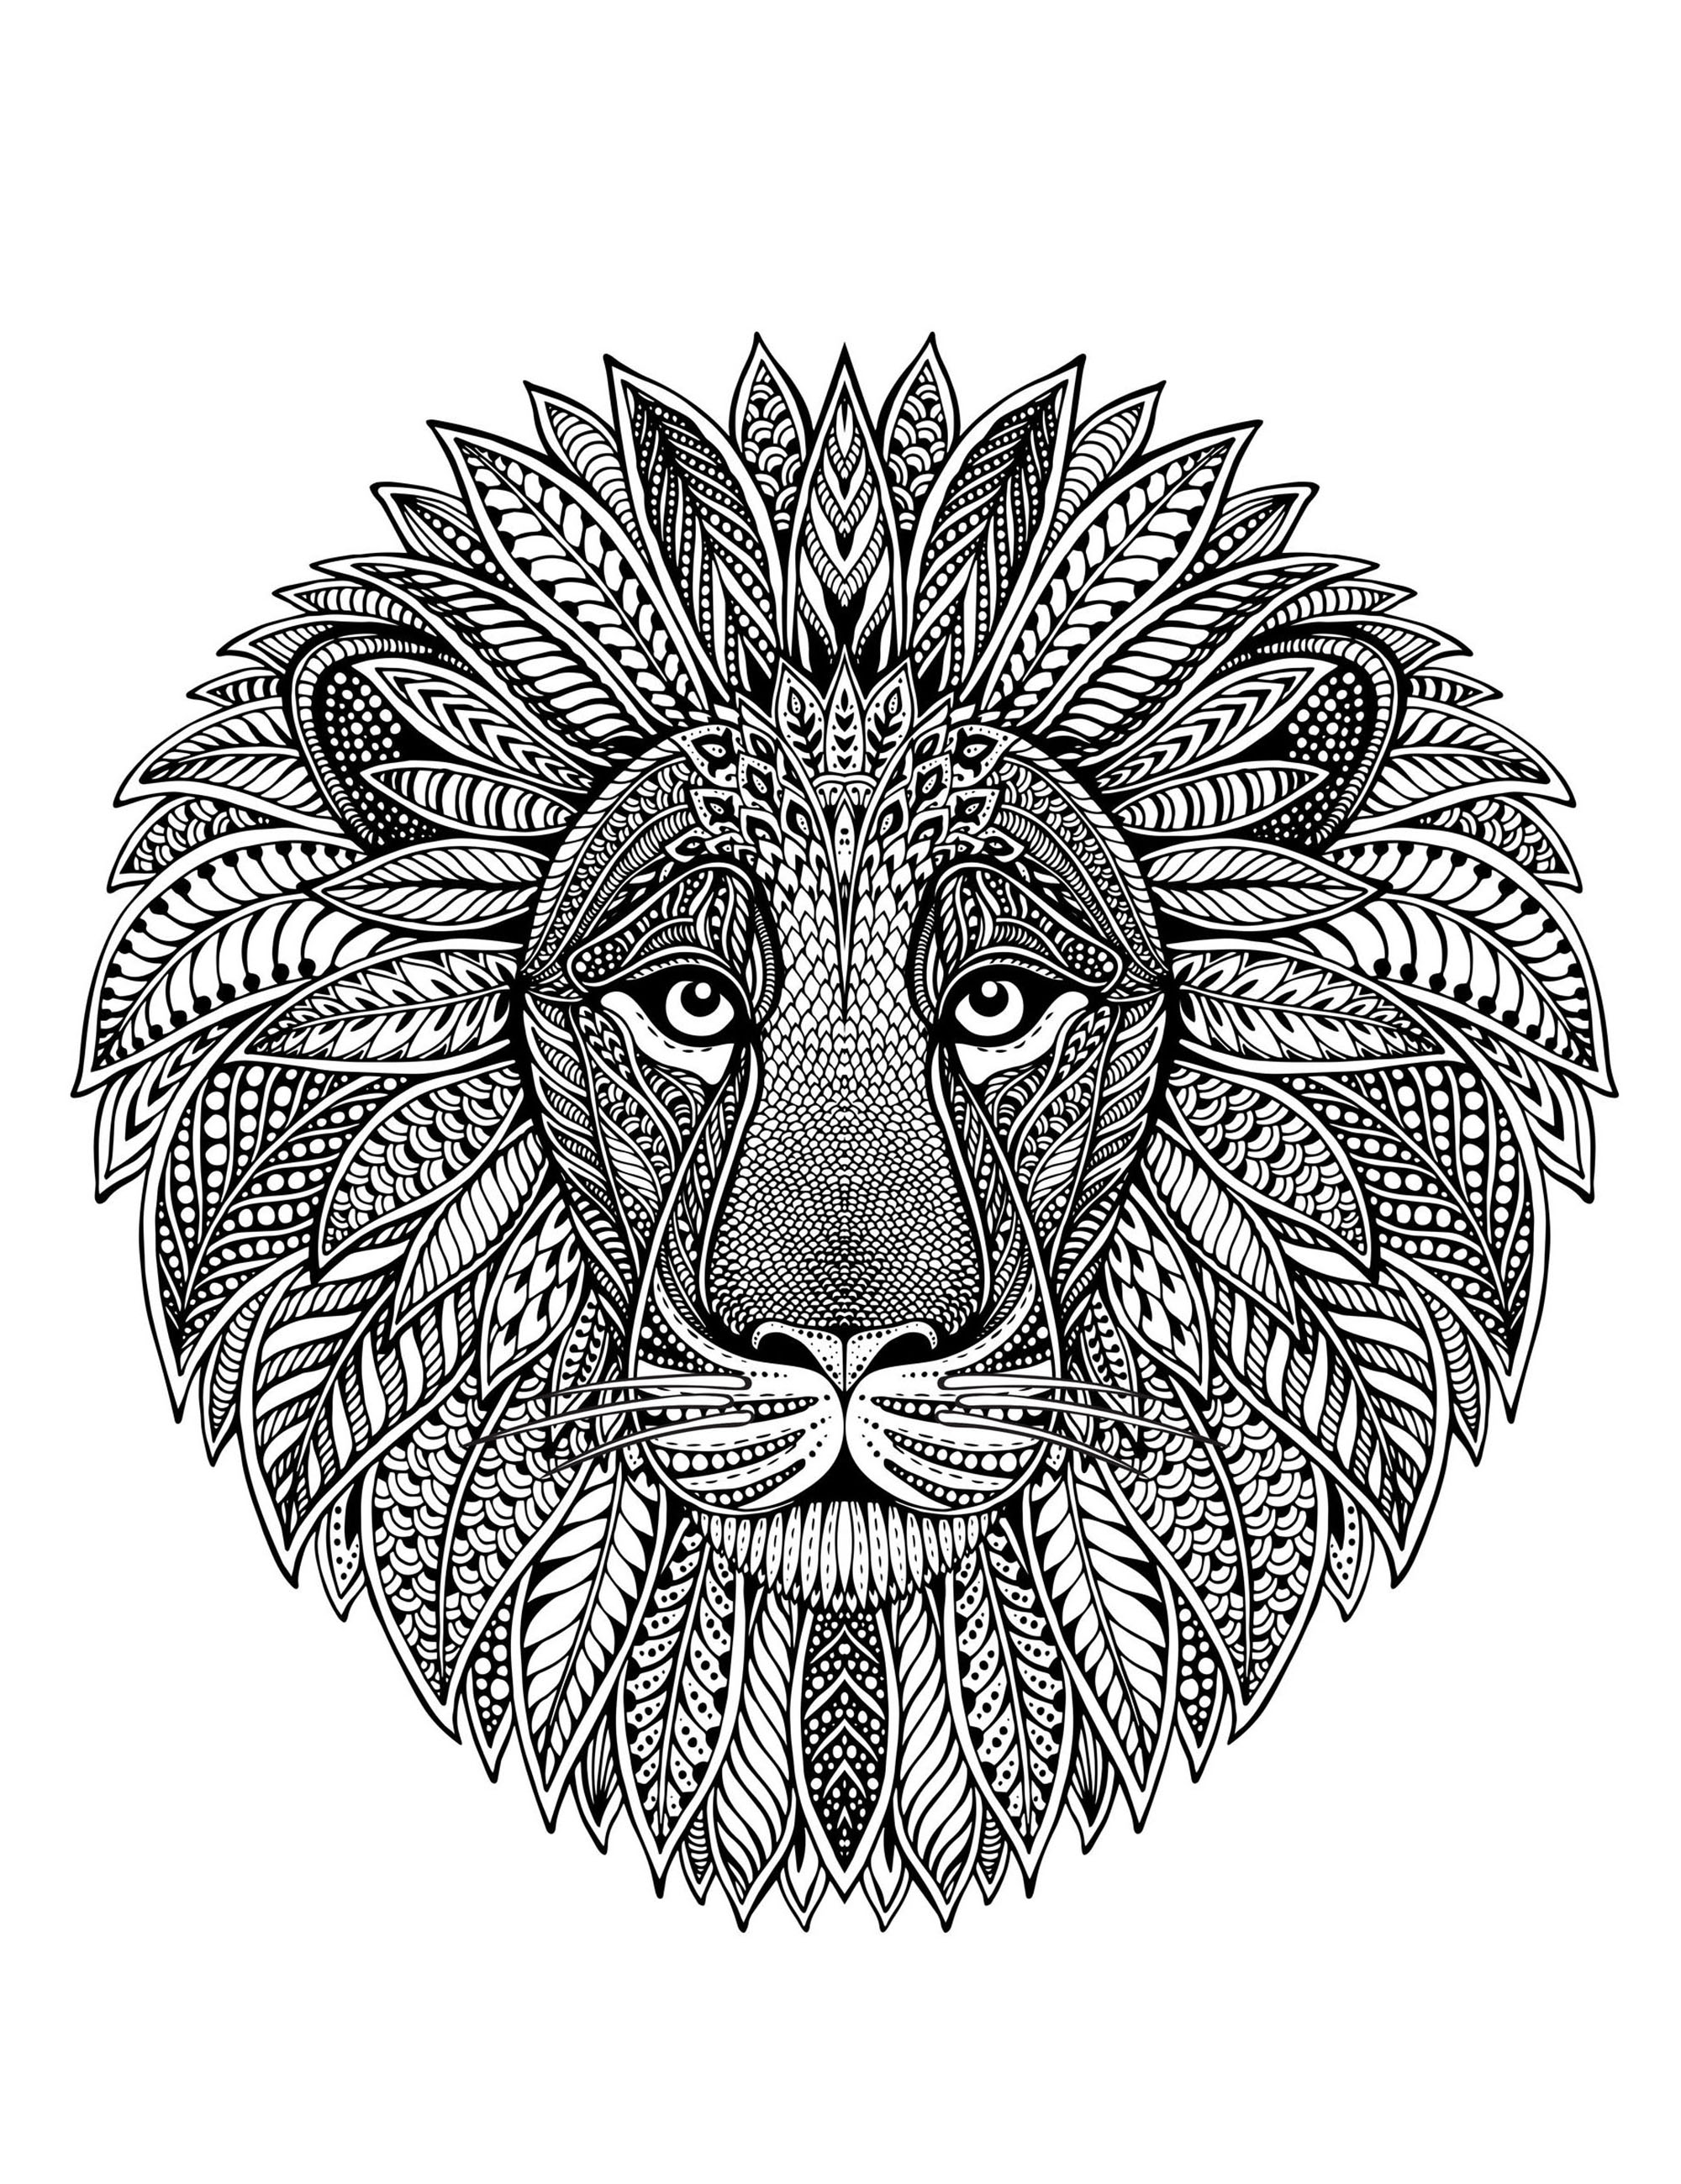 Mandala composé uniquement d'une impressionnante tête de lion